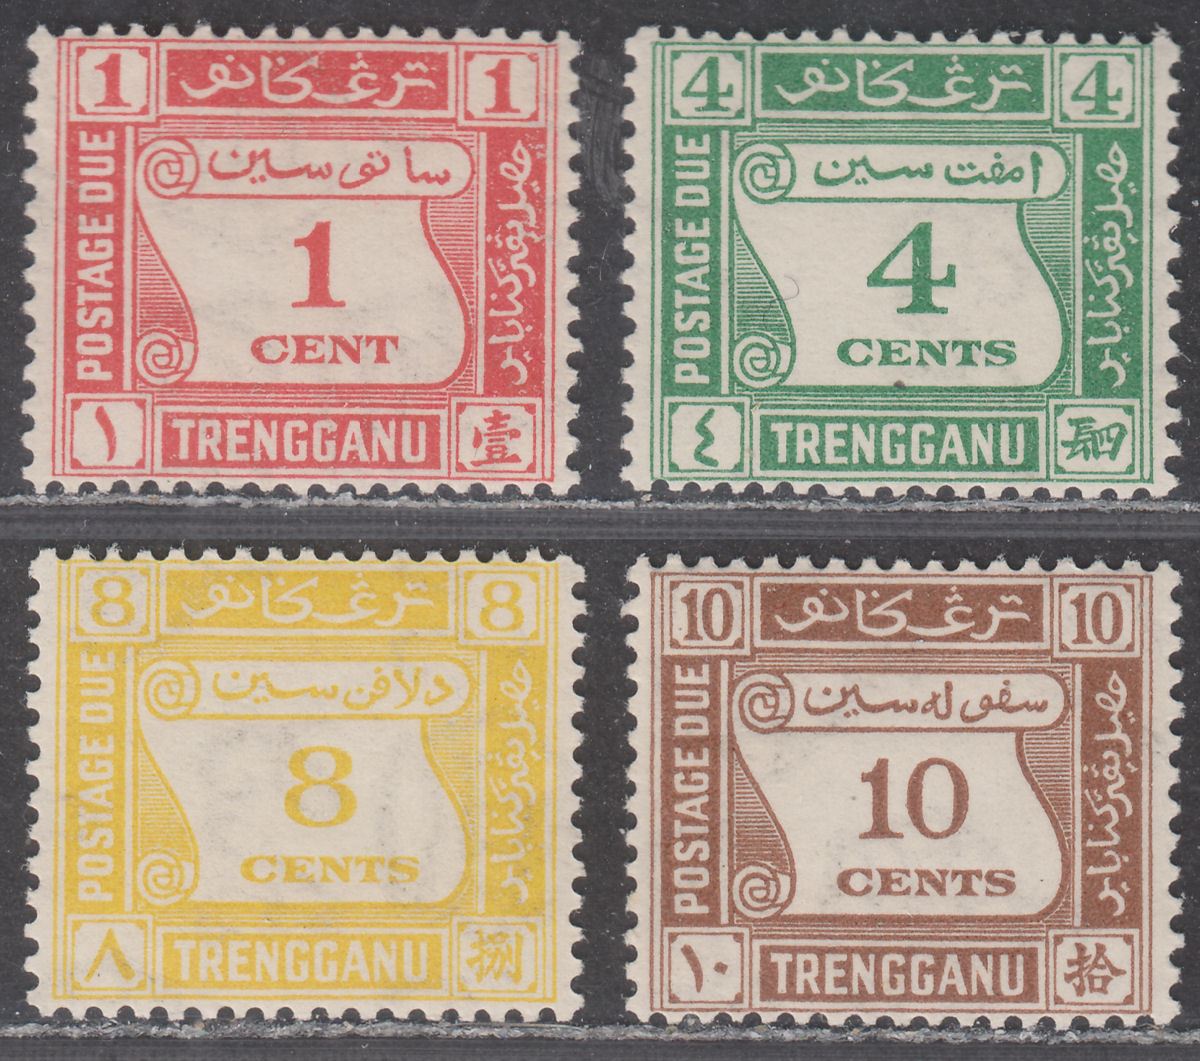 Malaya Trengganu 1937 Postage Due Set Mint SG D1-D4 cat £170